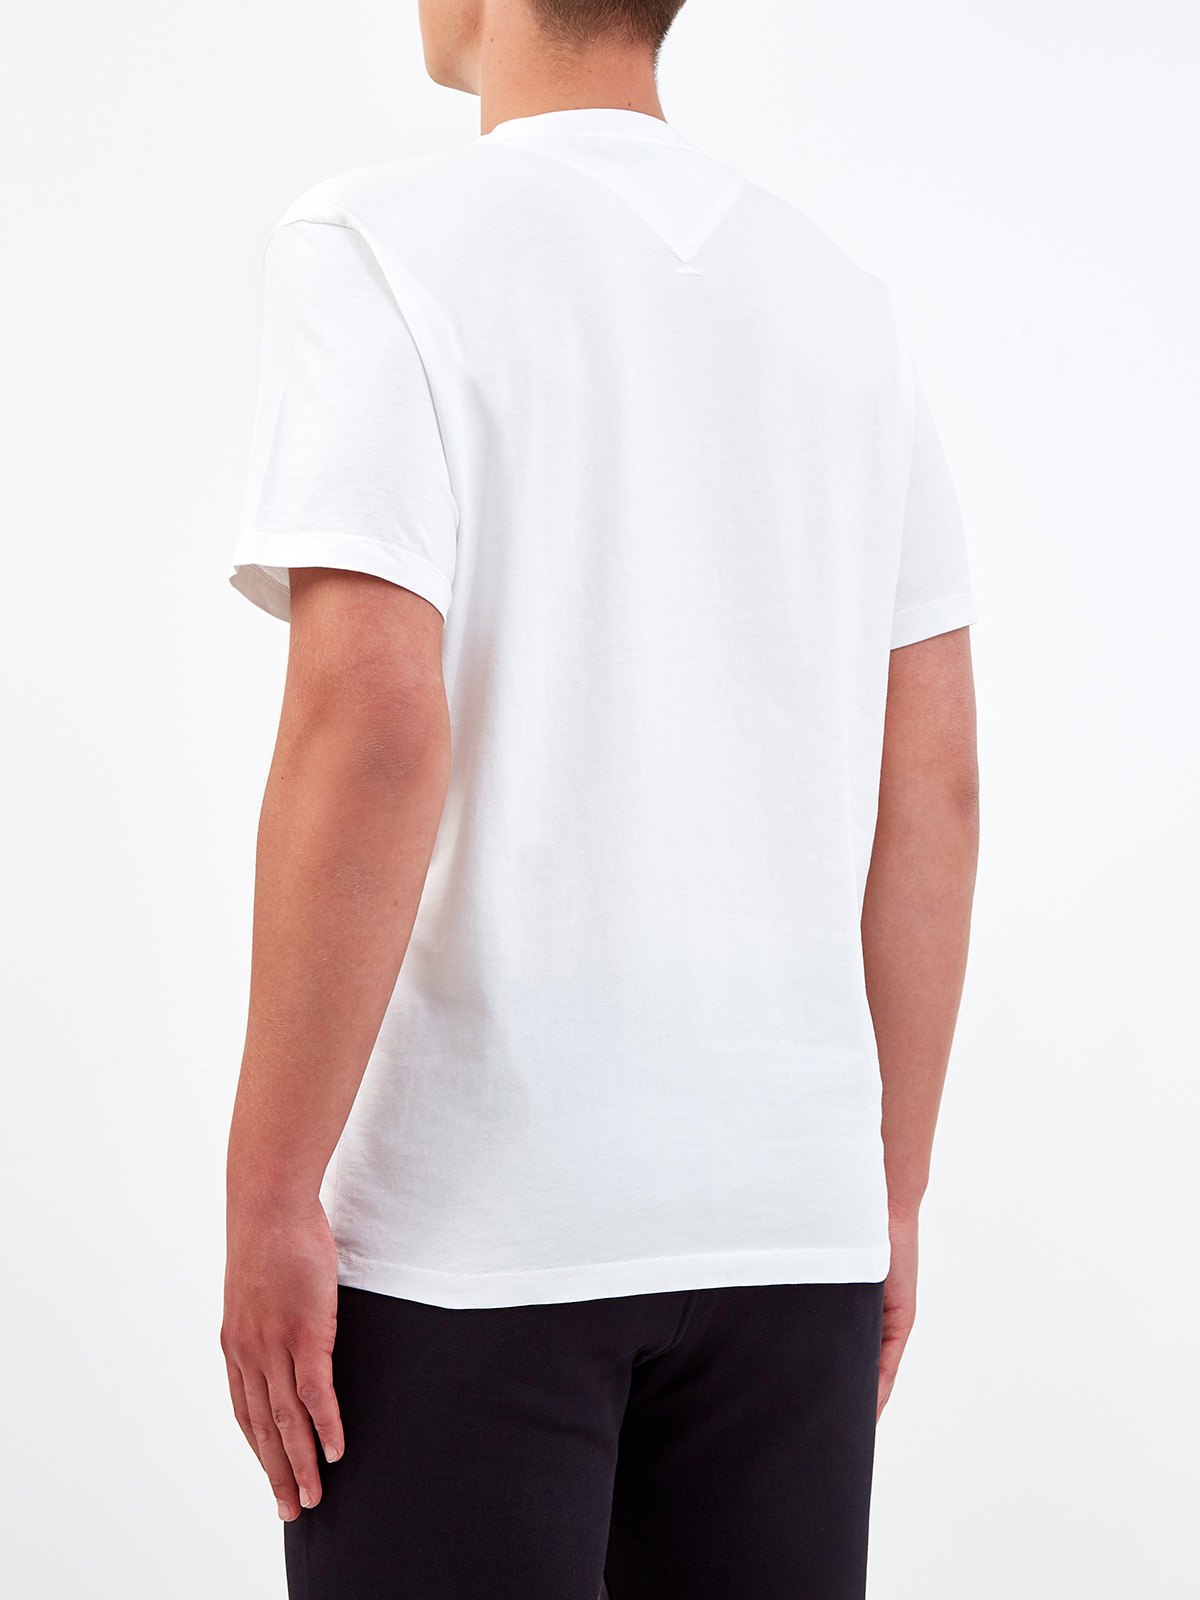 Хлопковая футболка с логотипом-аппликацией KENZO, цвет белый, размер S;M;XL;L - фото 4